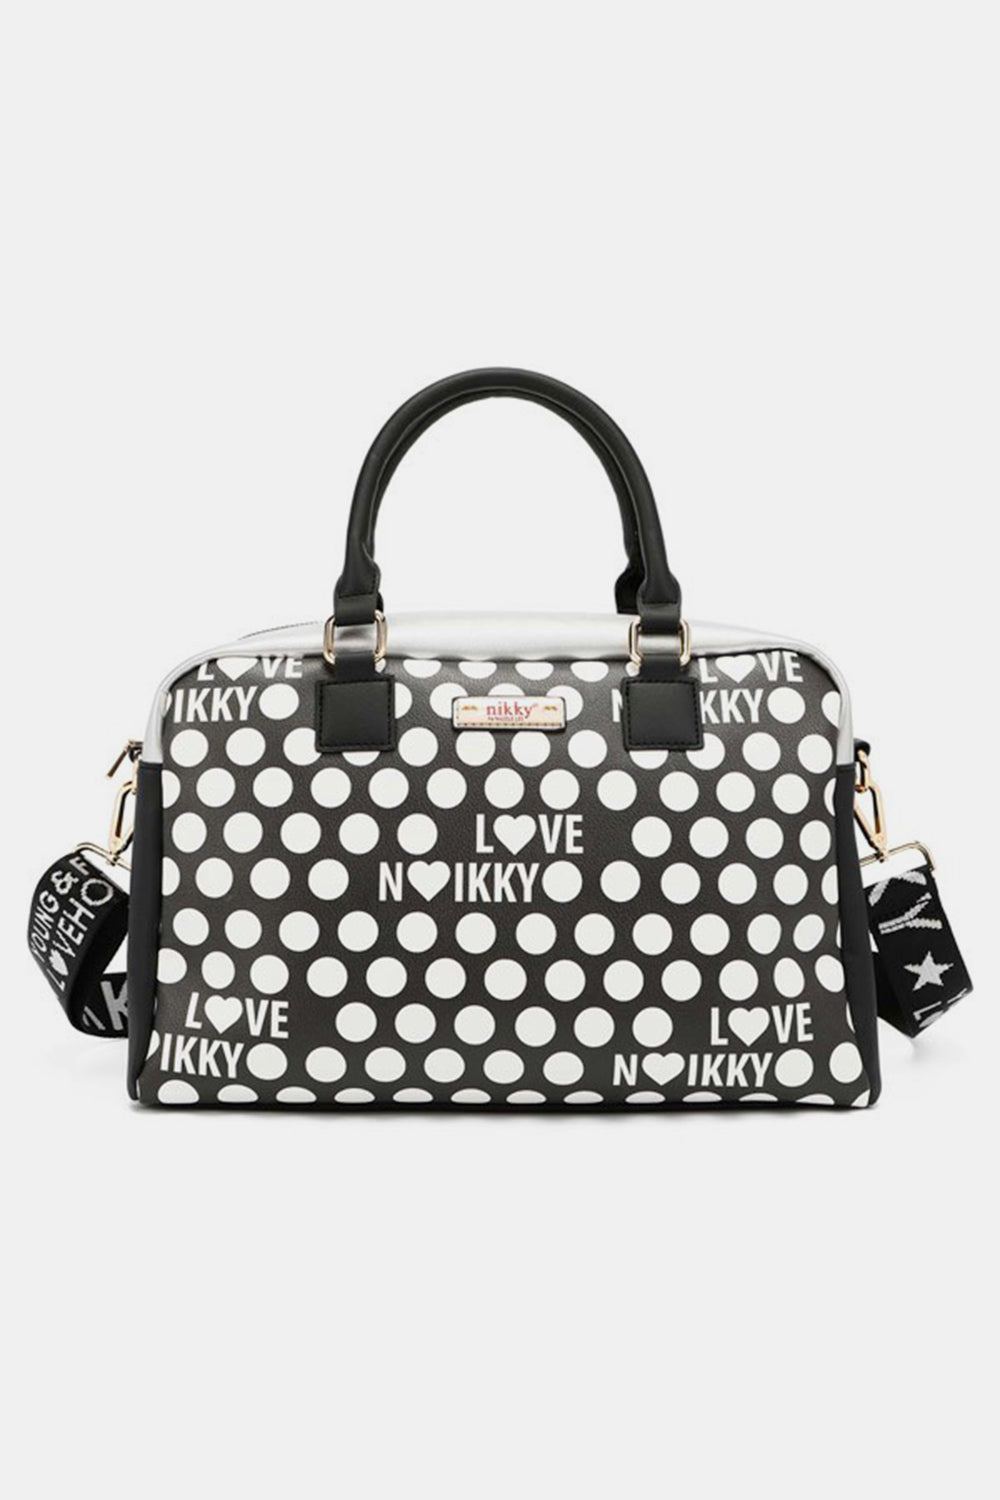 TEEK - NL Contrast Polka Dot Handbag BAG TEEK Trend Black  